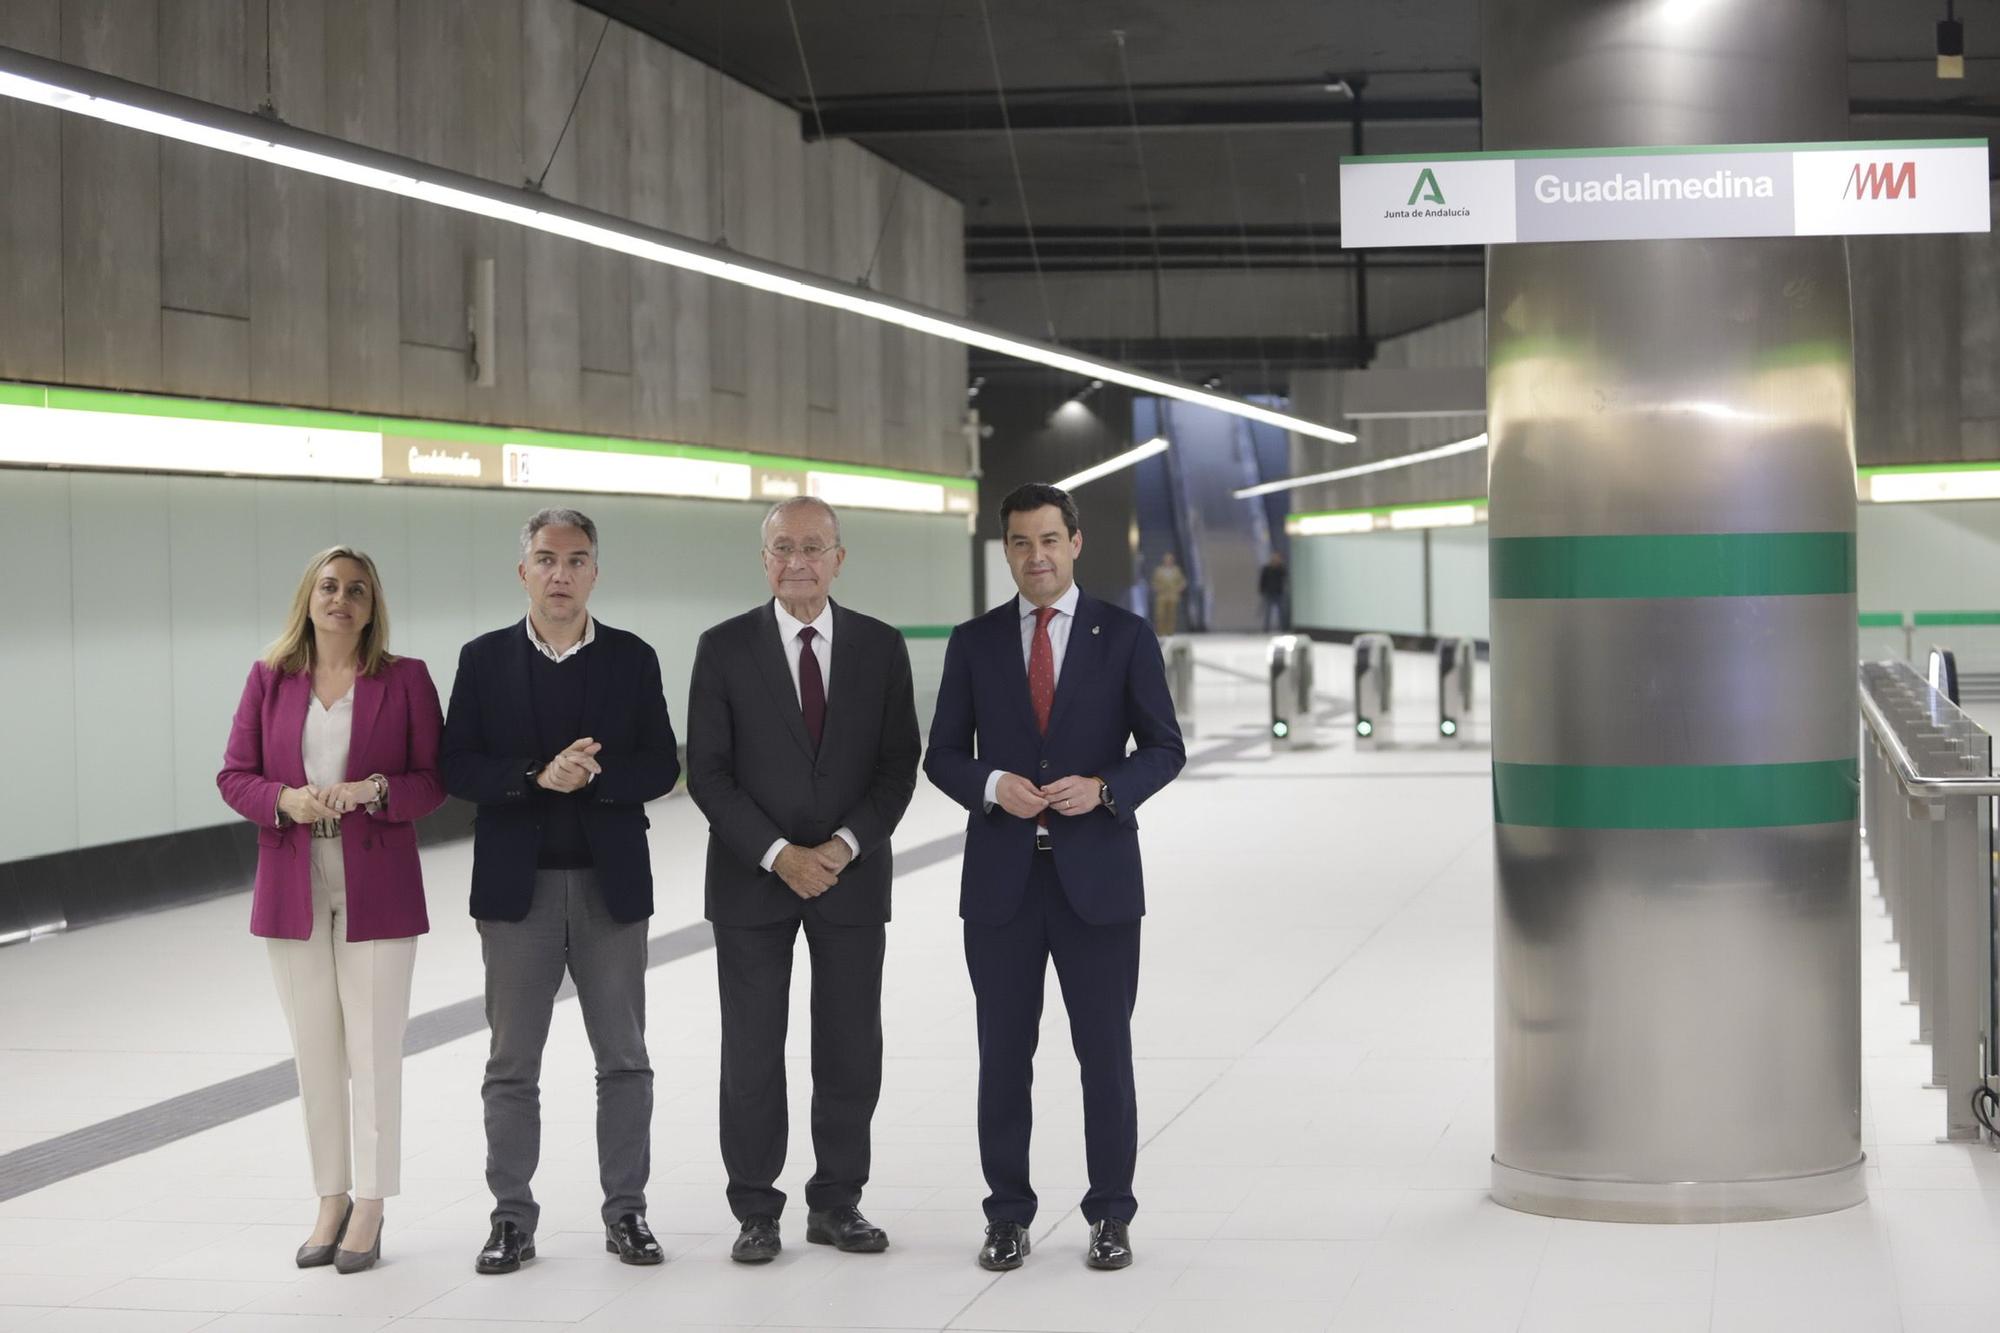 Inauguración de la estación Guadalmedina del metro de Málaga